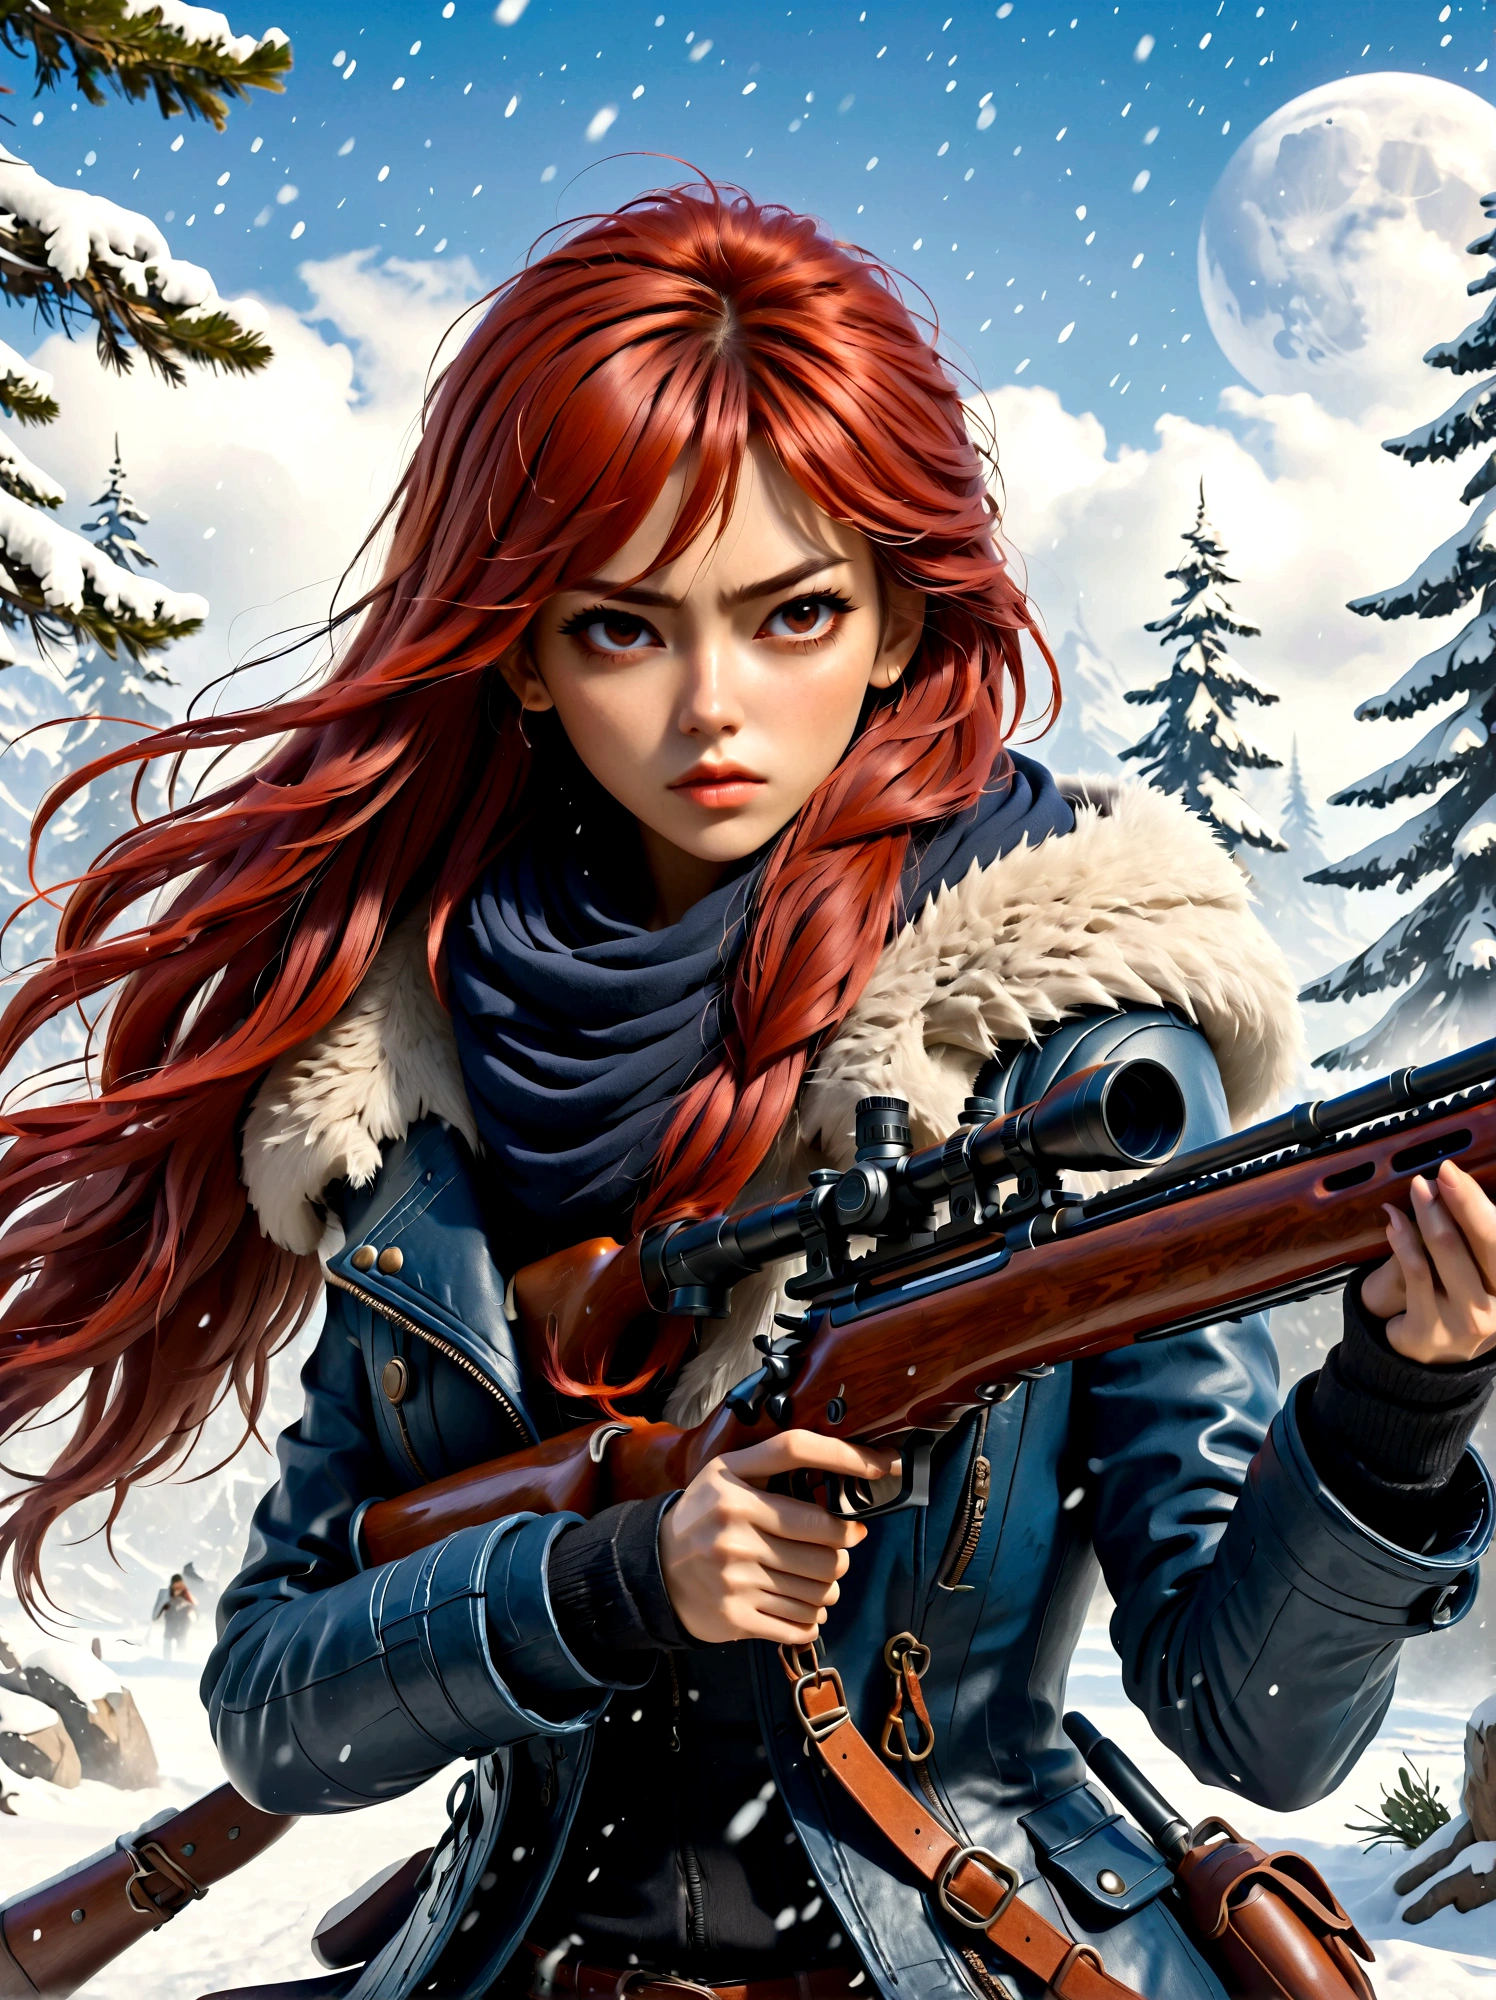 拿着步枪的女孩, (厌恶的表情:1.5), 雪地战斗姿势, 东方, 剑灵, 水墨风格, 长长的红头发, 皮革和毛皮大衣, 寒冷的, 艺术品, 3D, 4k, 详细的, 实际的